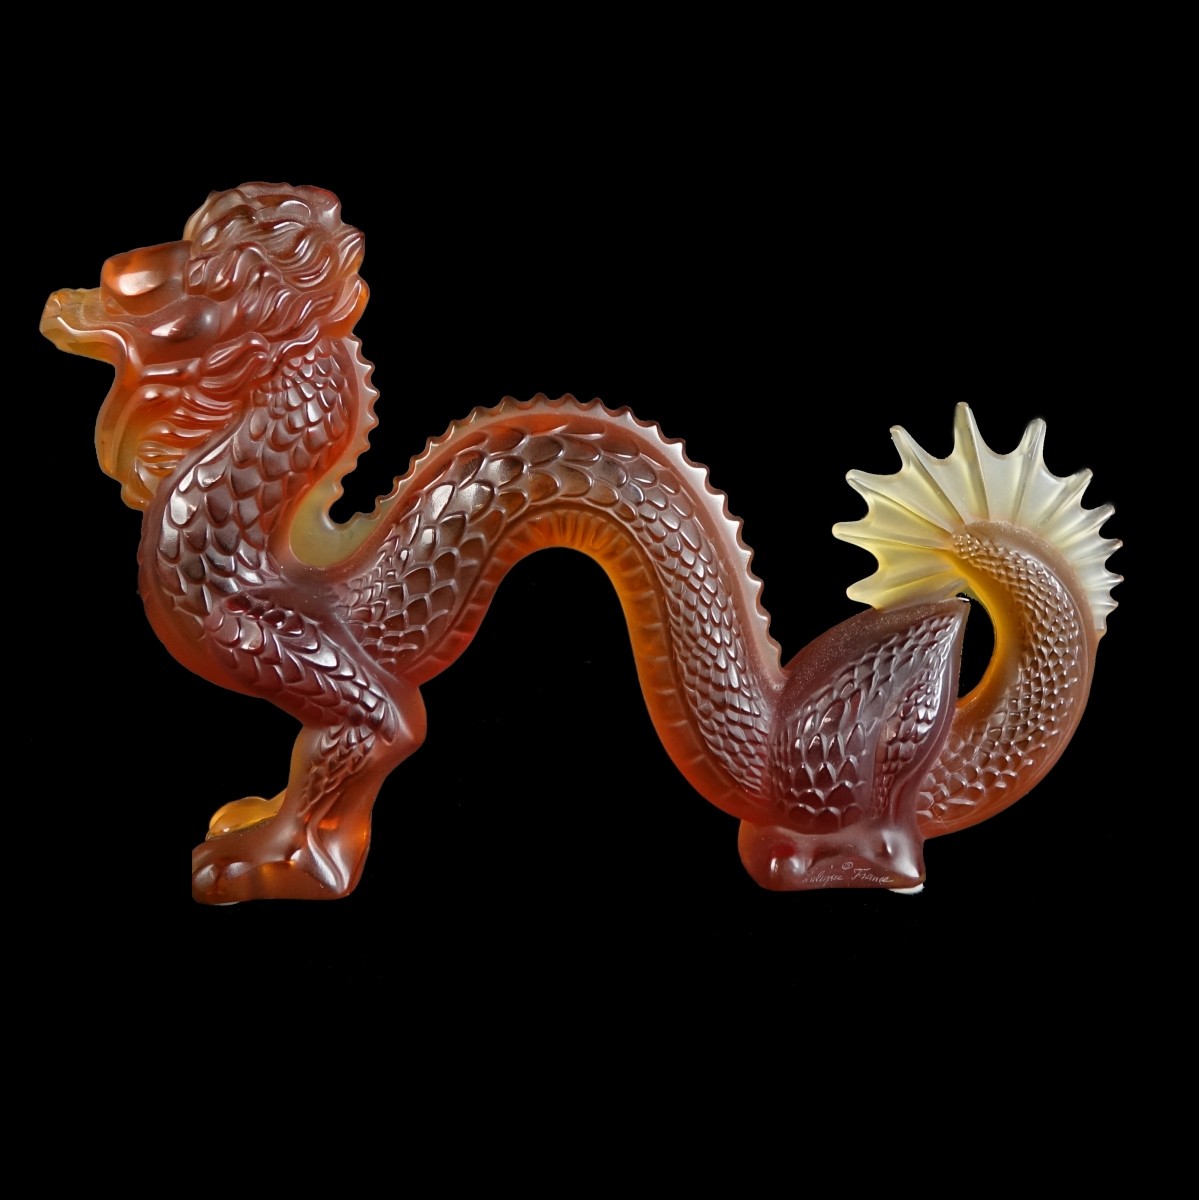 Lalique "Dragon" Crystal Figurine